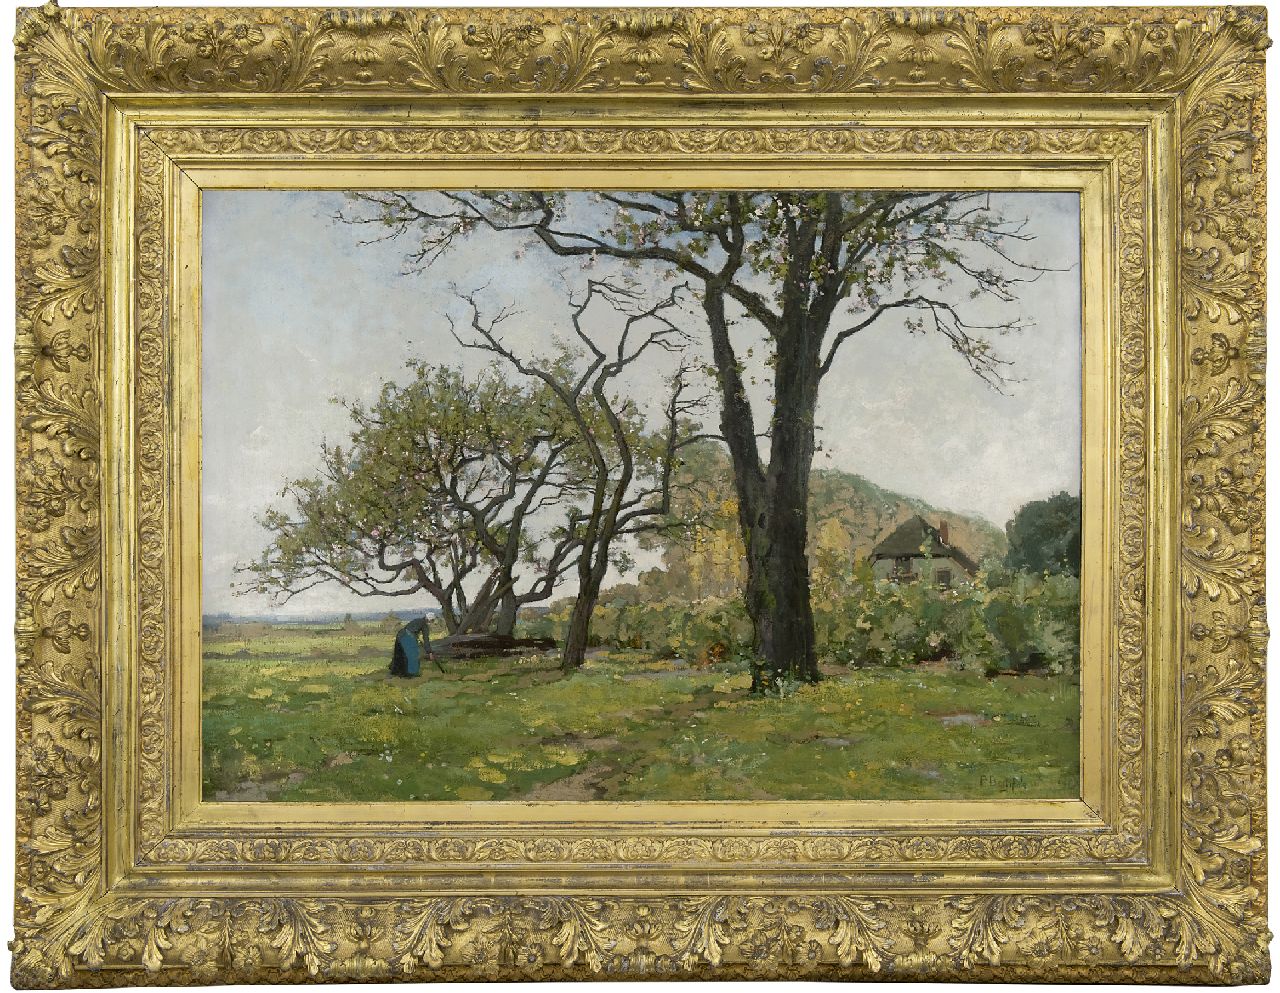 Bodifée J.P.P.  | Johannes Petrus Paulus 'Paul' Bodifée | Paintings offered for sale | Landscape with blossom trees near Deventer, oil on canvas 70.4 x 100.2 cm, signed l.r.